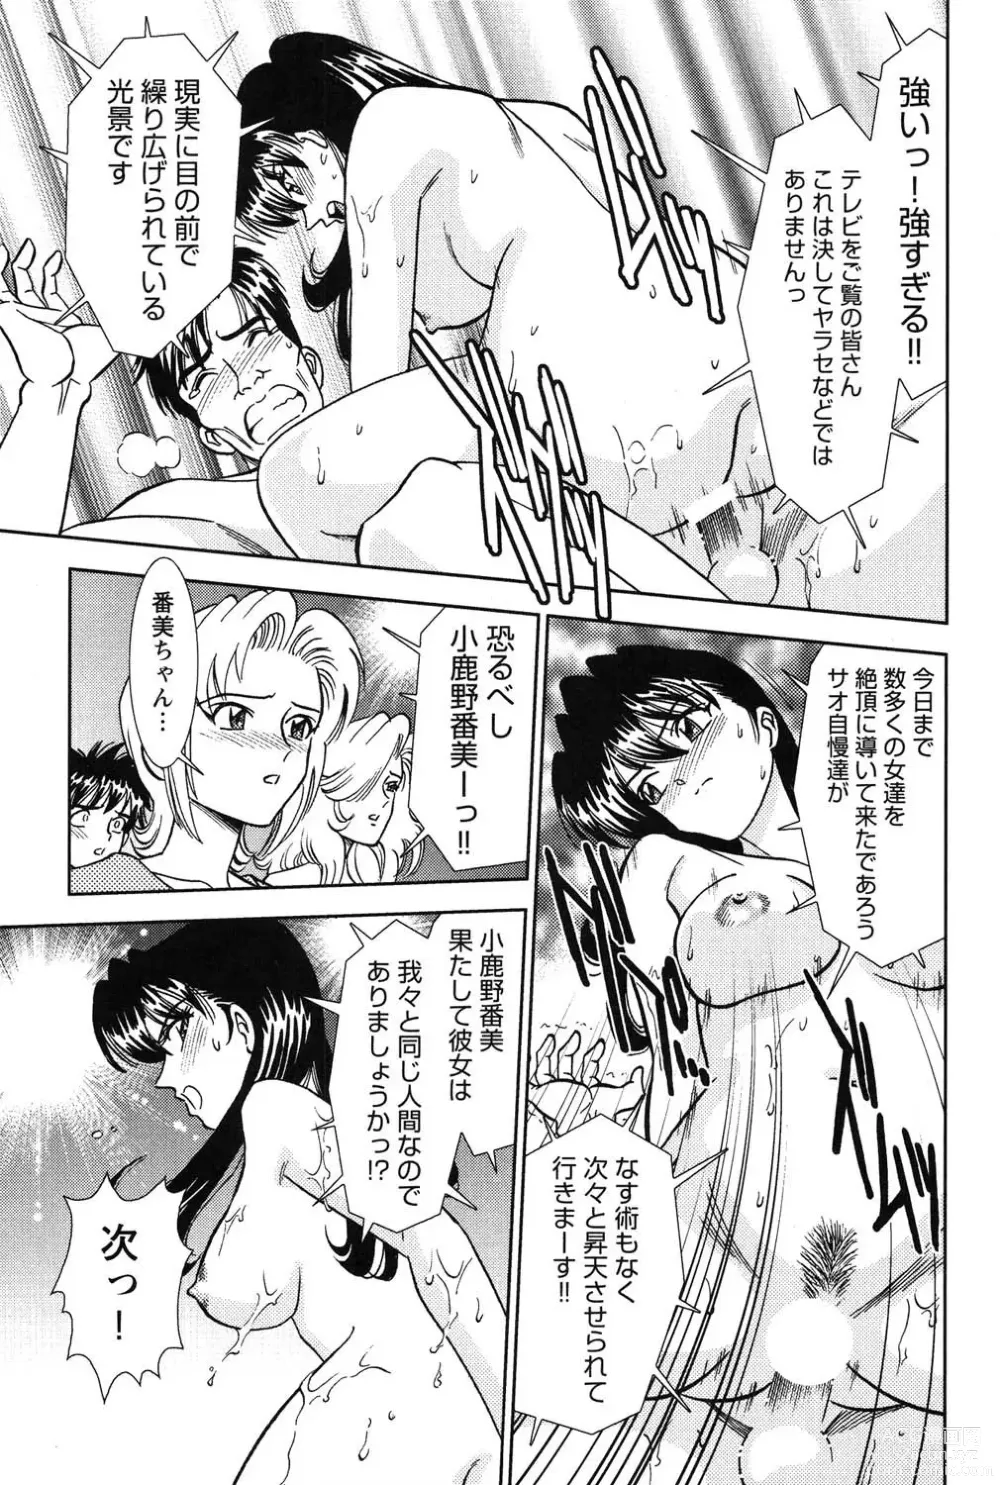 Page 216 of manga Bambina Oiroke  Battle  Hen